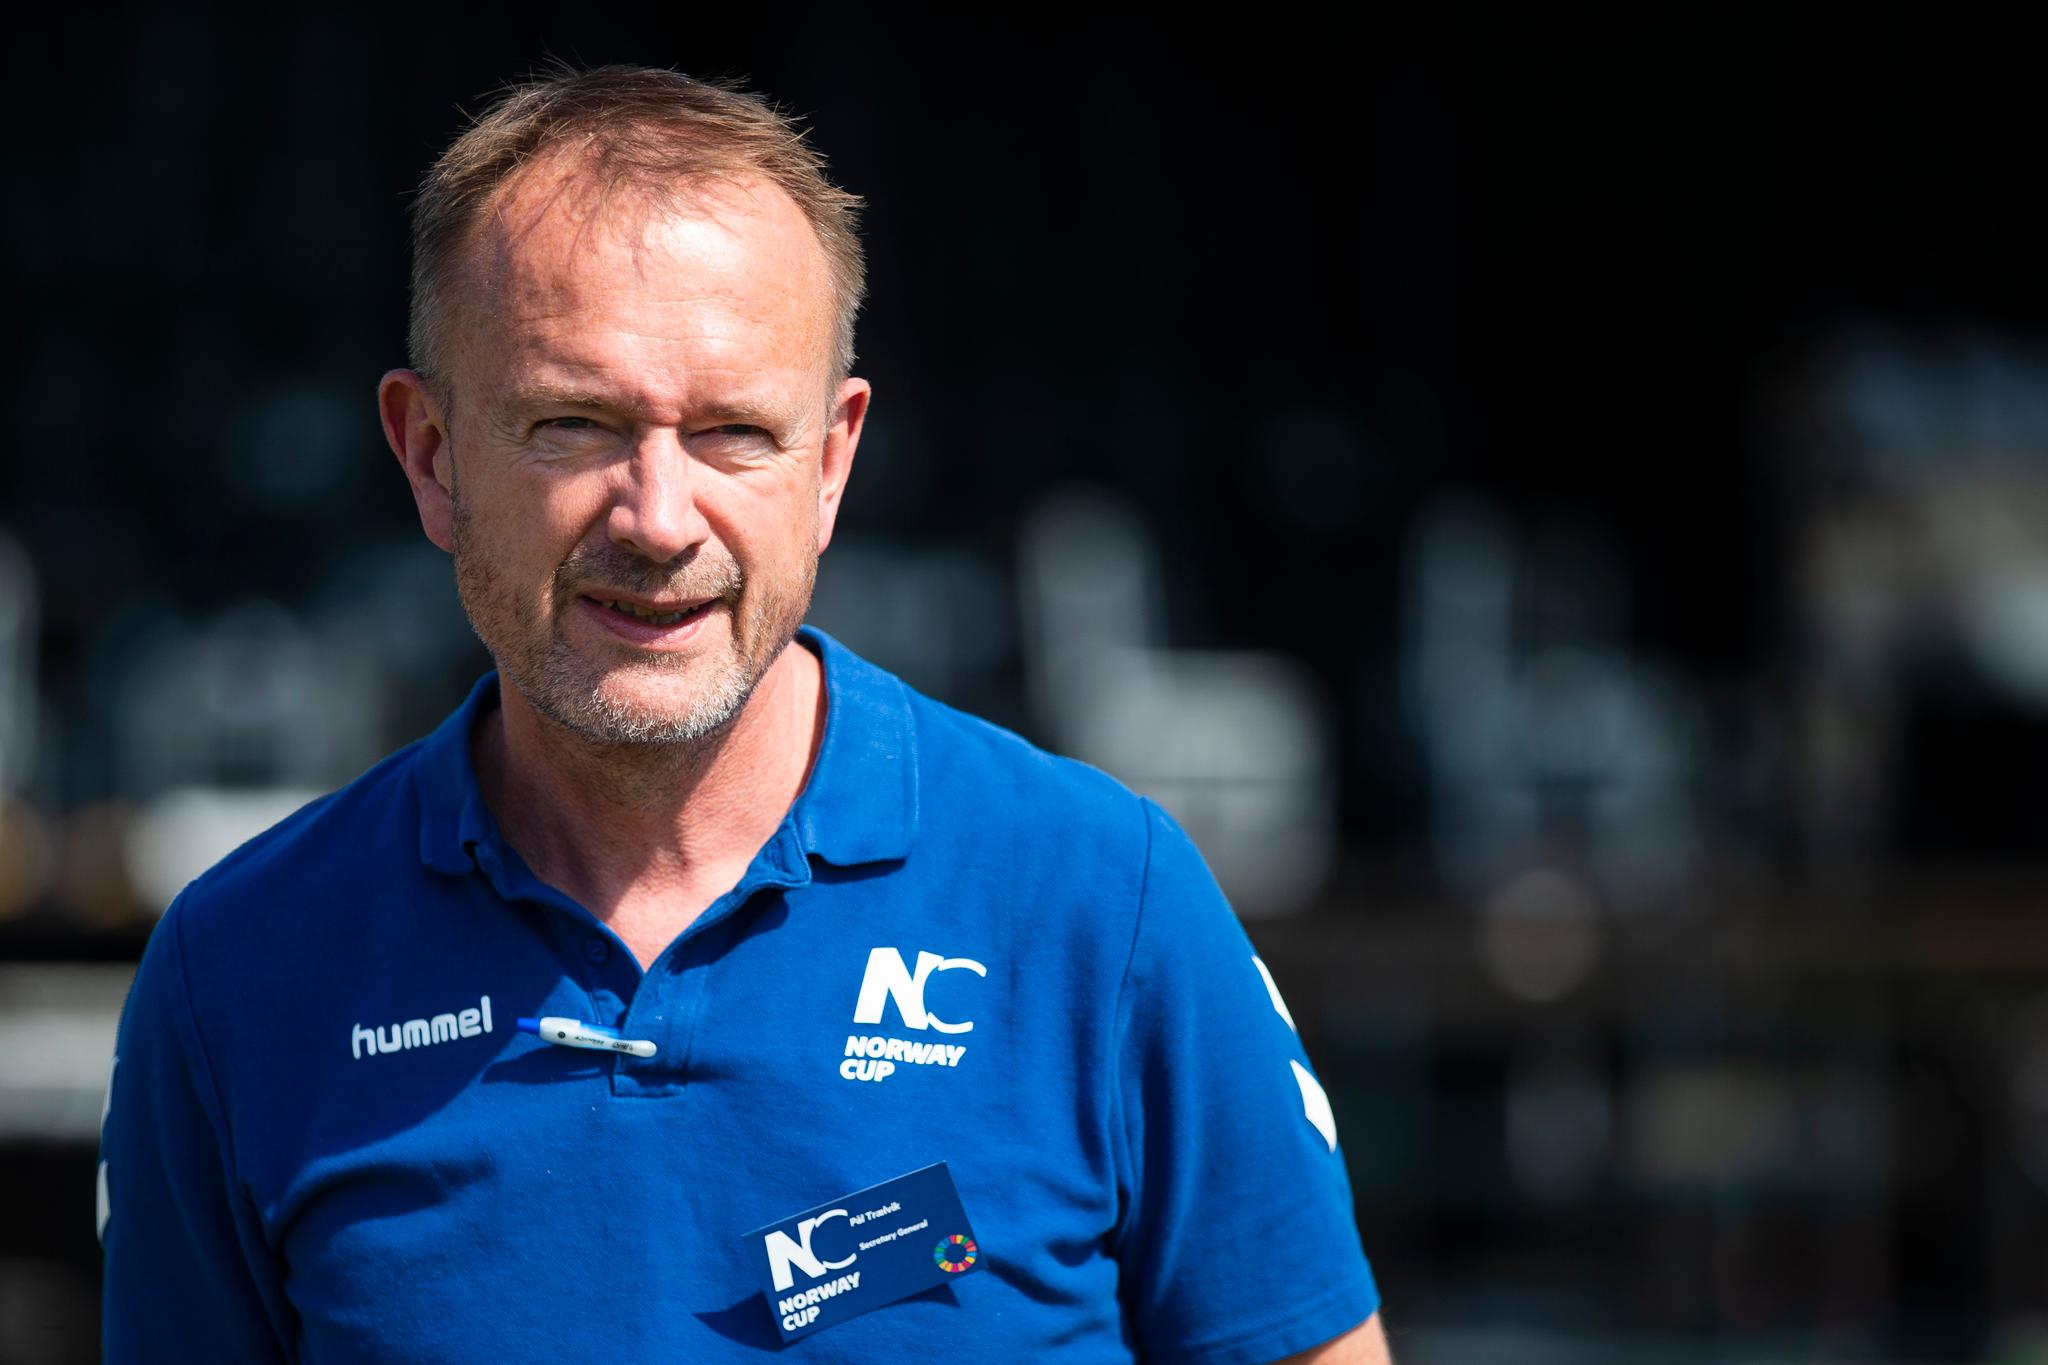 Generalsekretær for Norway Cup, Pål Trælvik, synes det er synd for alle at turneringen blir avlyst.